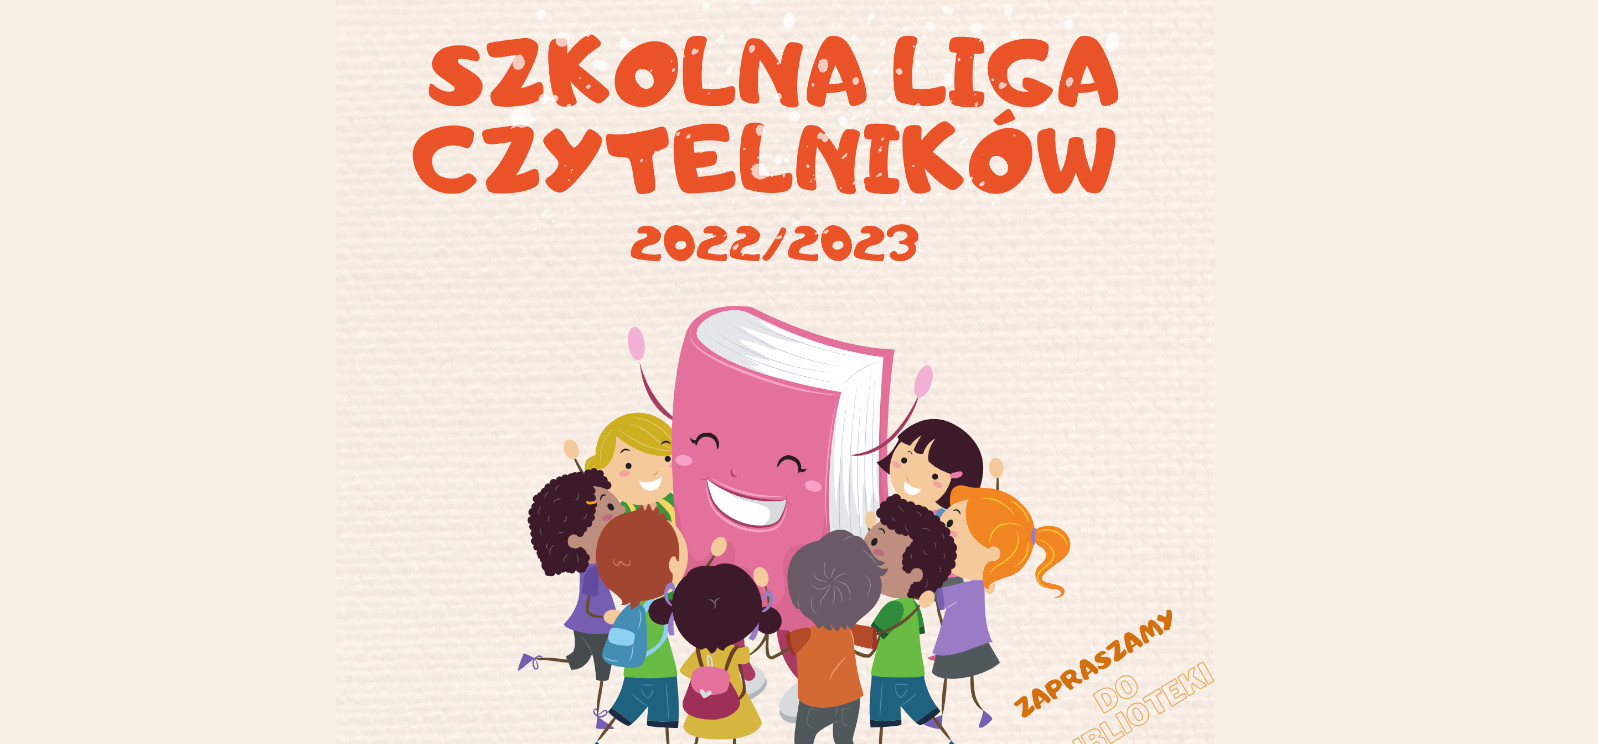 Szkolna liga czytelników 2022/2023